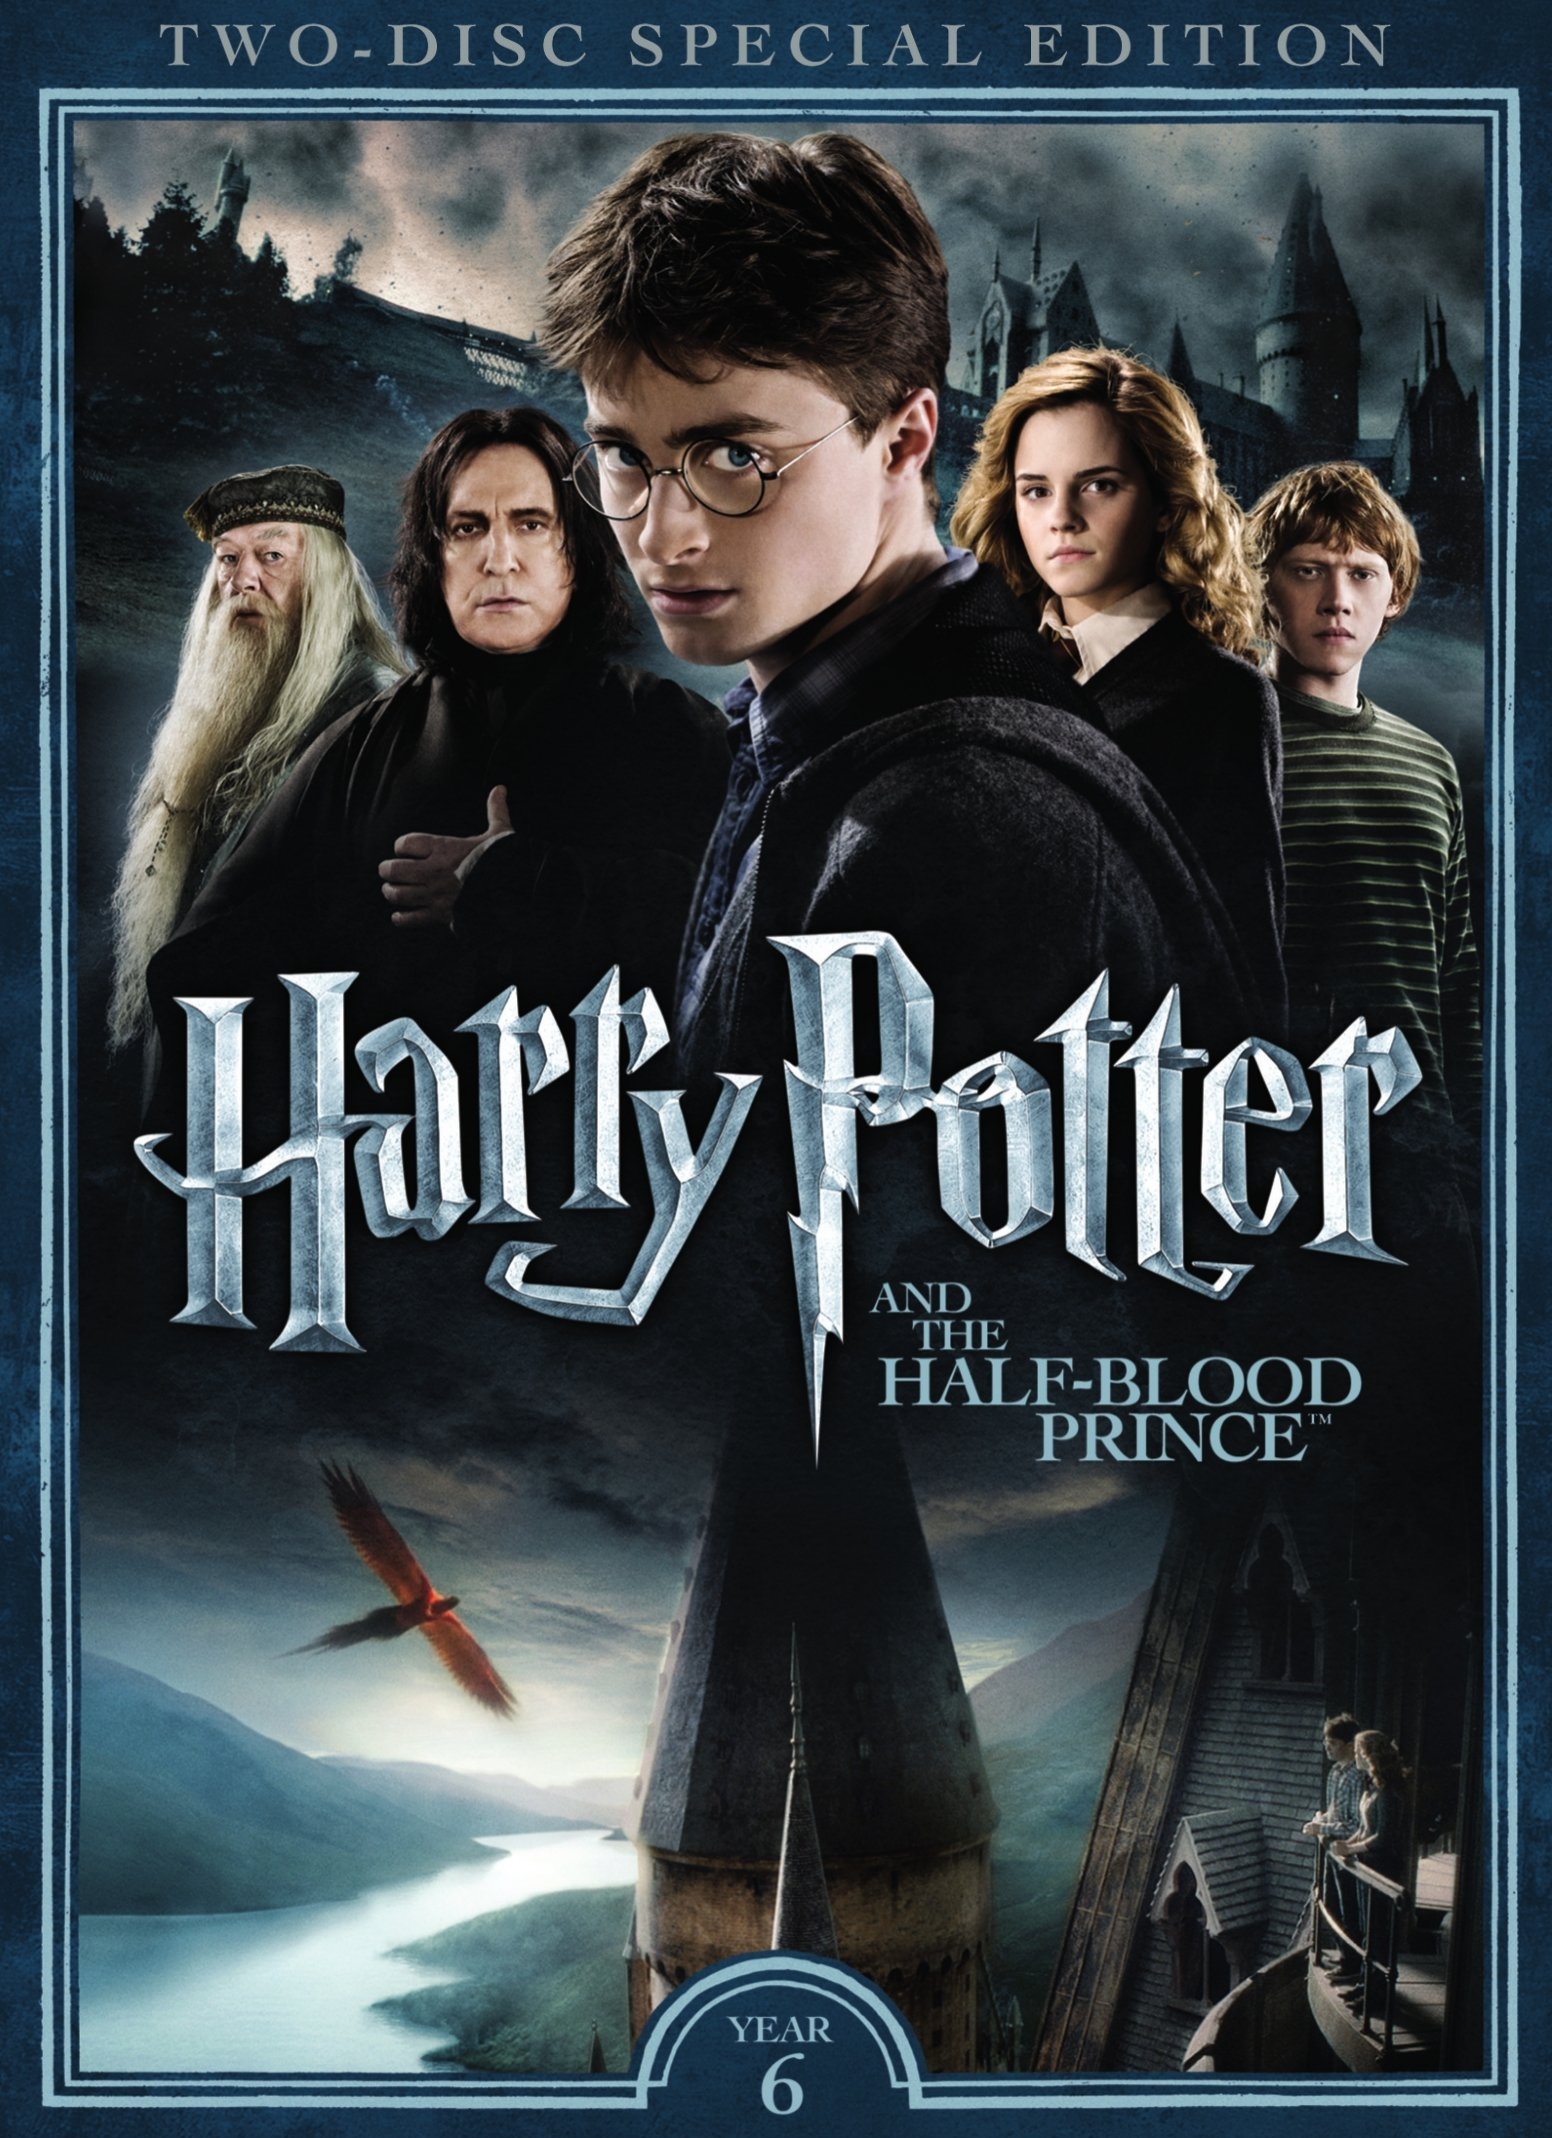 Spelling Een evenement Persoonlijk Harry Potter and the Half-Blood Prince [2 Discs] [DVD] [2009] - Best Buy